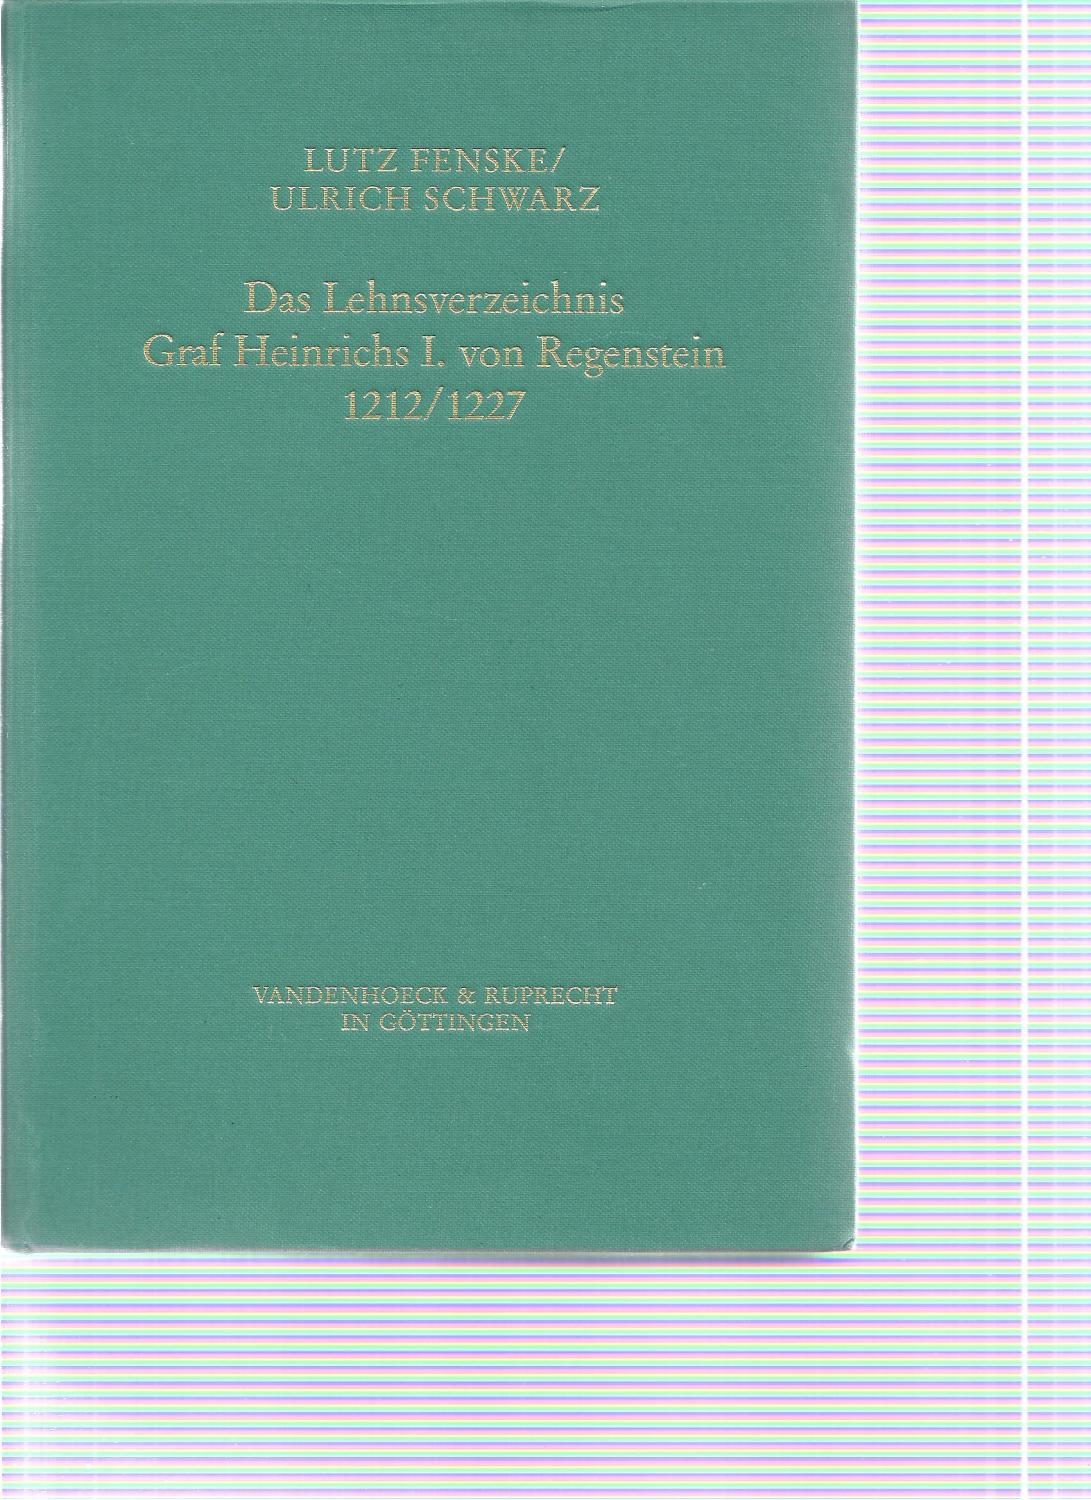 Das Lehnsverzeichnis Graf Heinrichs I. von Regenstein 1212/1227: Gräfliche Herrschaft, Lehen und niederer Adel am Nordharz - Fenske, Lutz/Schwarz, Ulrich